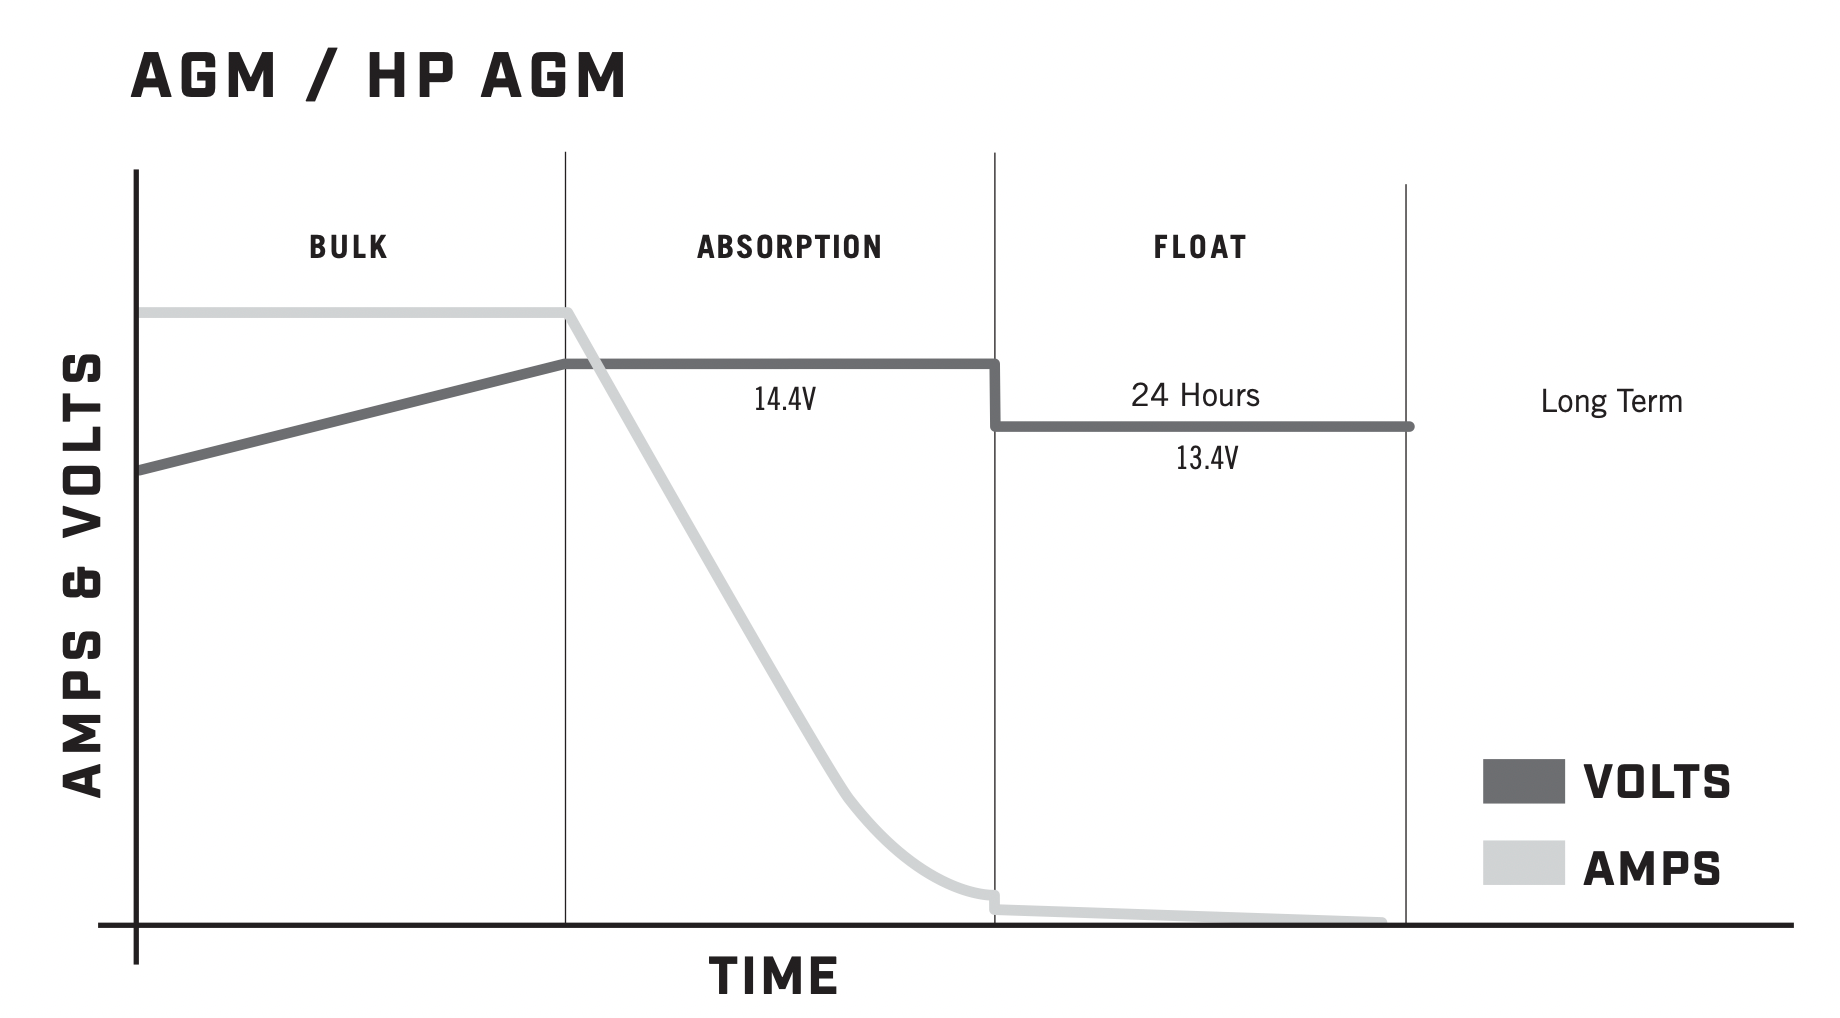 AGM/HP AGM Charging Profile